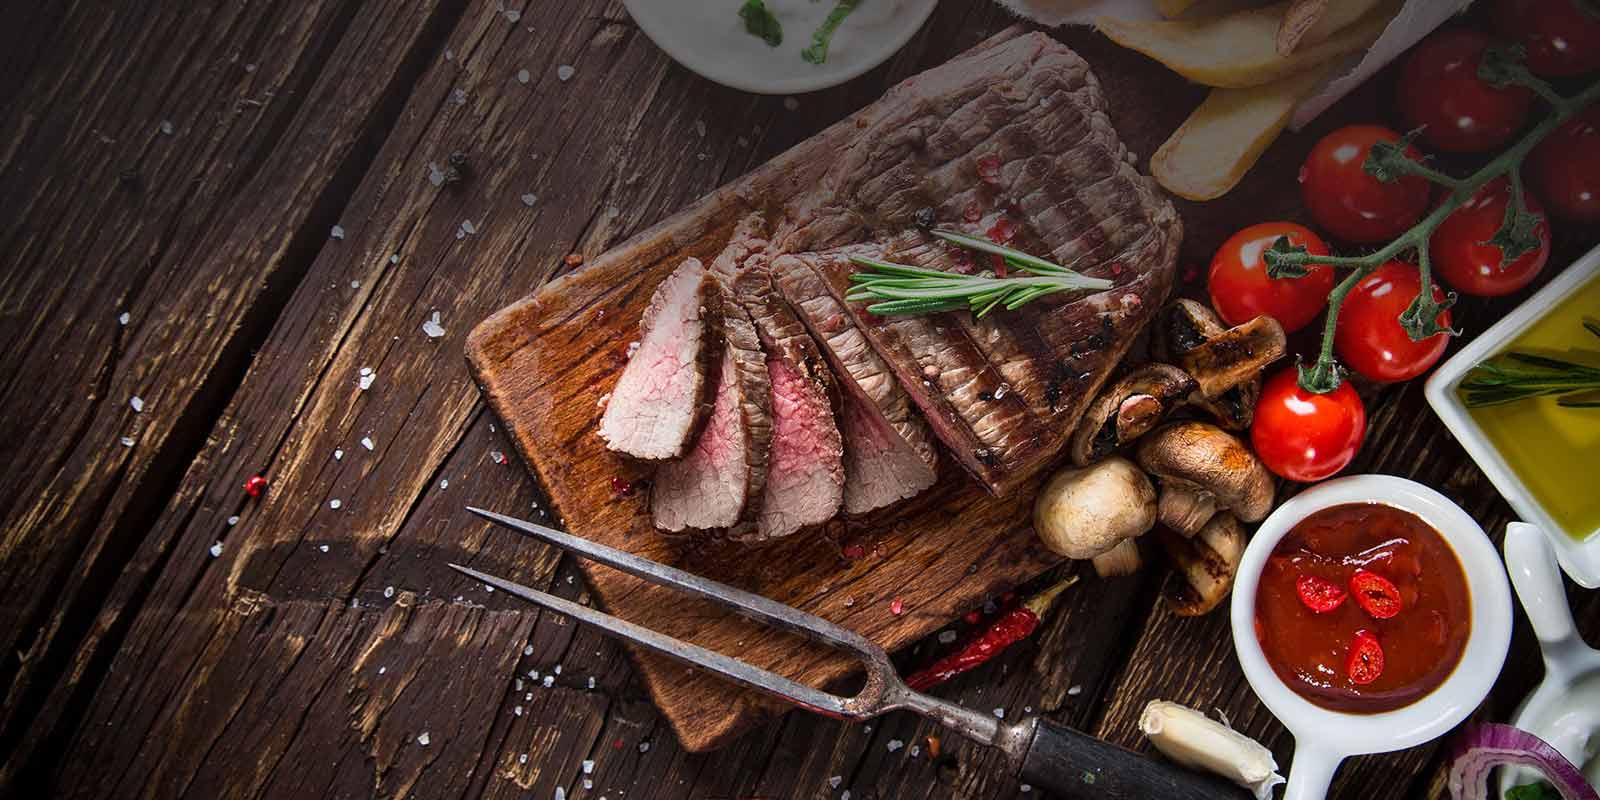 Greenlea-vlees uit Nieuw-Zeeland Greenlea is er trots op het beste vlees te produceren dat voor 100% met gras is gevoerd.